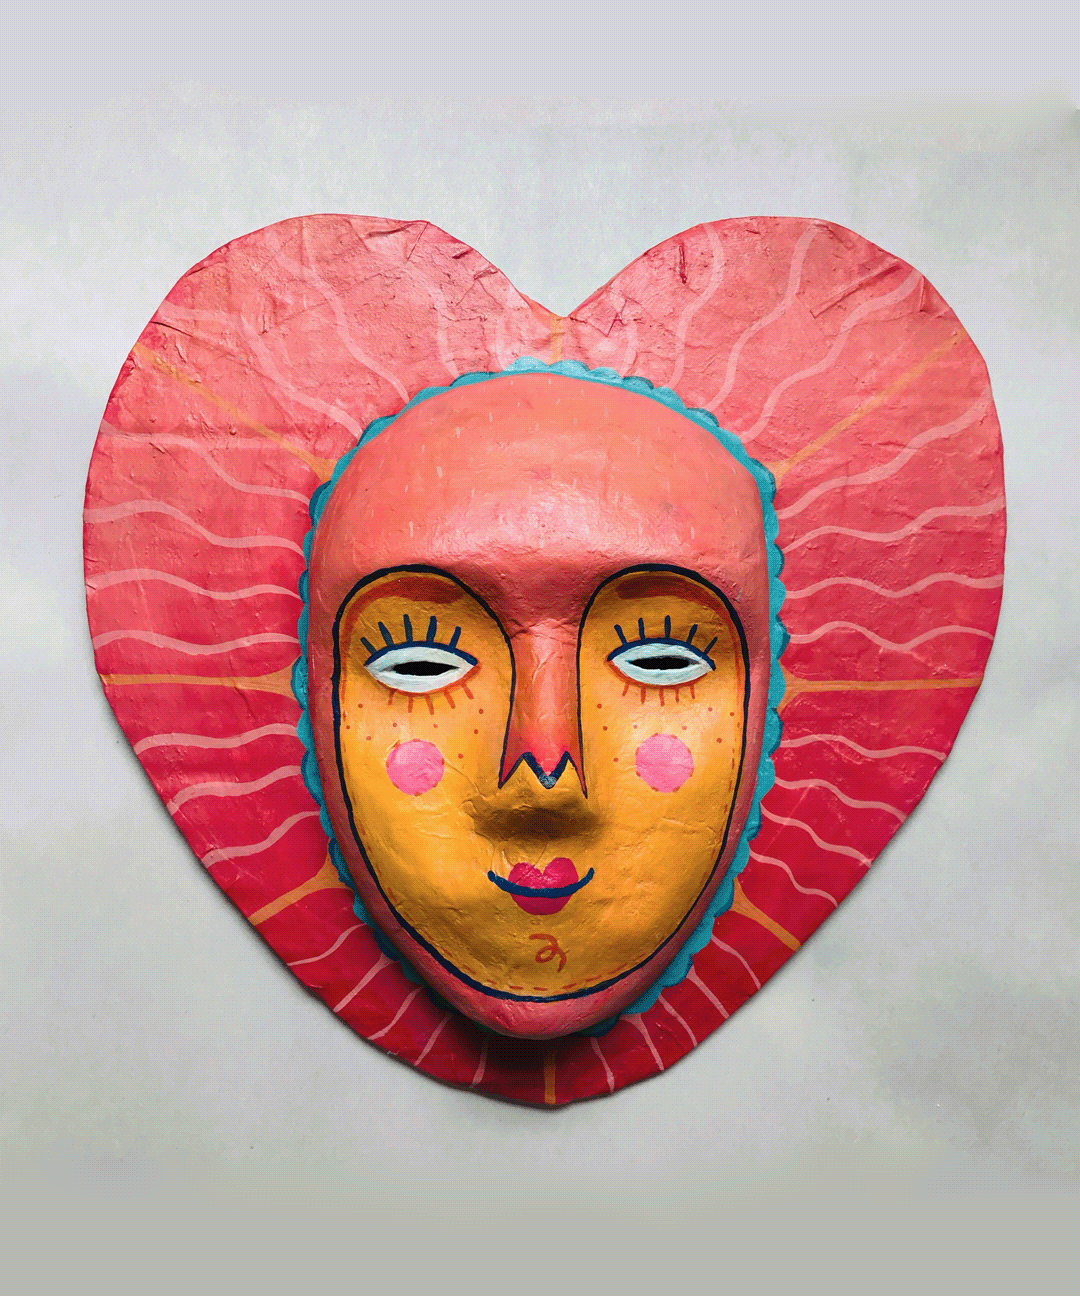 #máscaras amor artesanias cartonería corazon mascaras mexicanas mexico mexico city papelmache mascaras